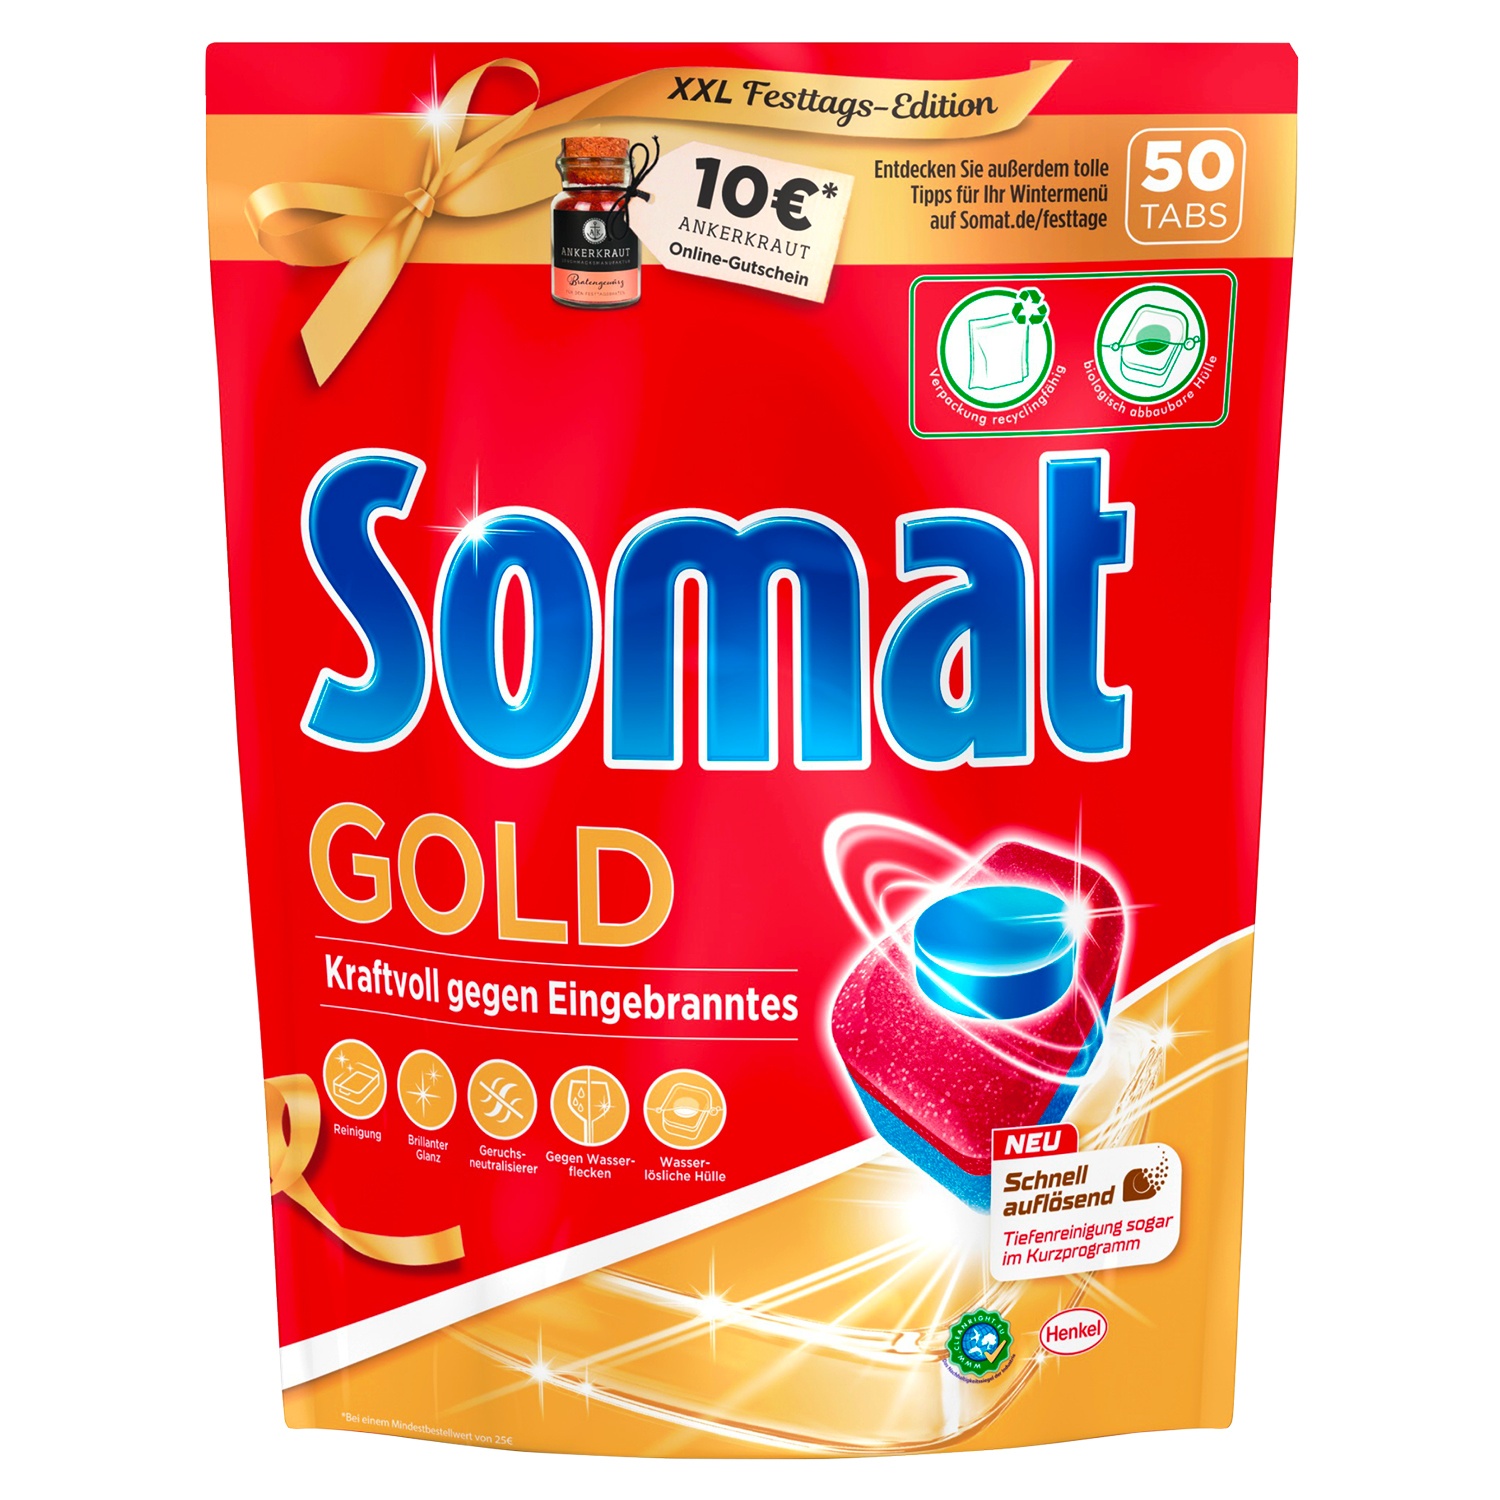 Somat Tabs 12 Gold